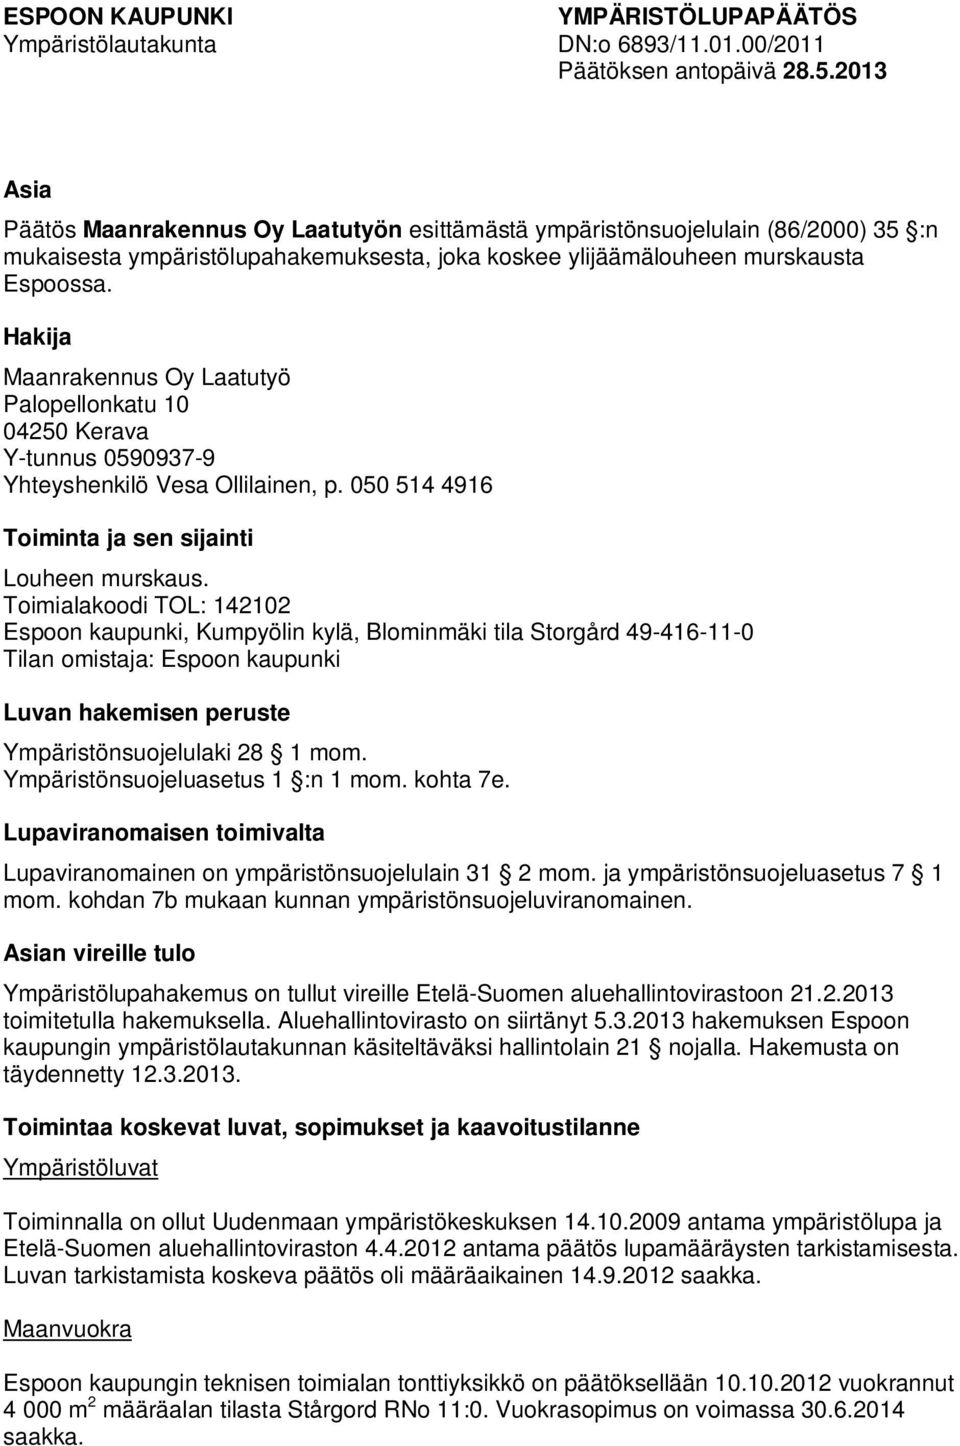 Hakija Maanrakennus Oy Laatutyö Palopellonkatu 10 04250 Kerava Y-tunnus 0590937-9 Yhteyshenkilö Vesa Ollilainen, p. 050 514 4916 Toiminta ja sen sijainti Louheen murskaus.